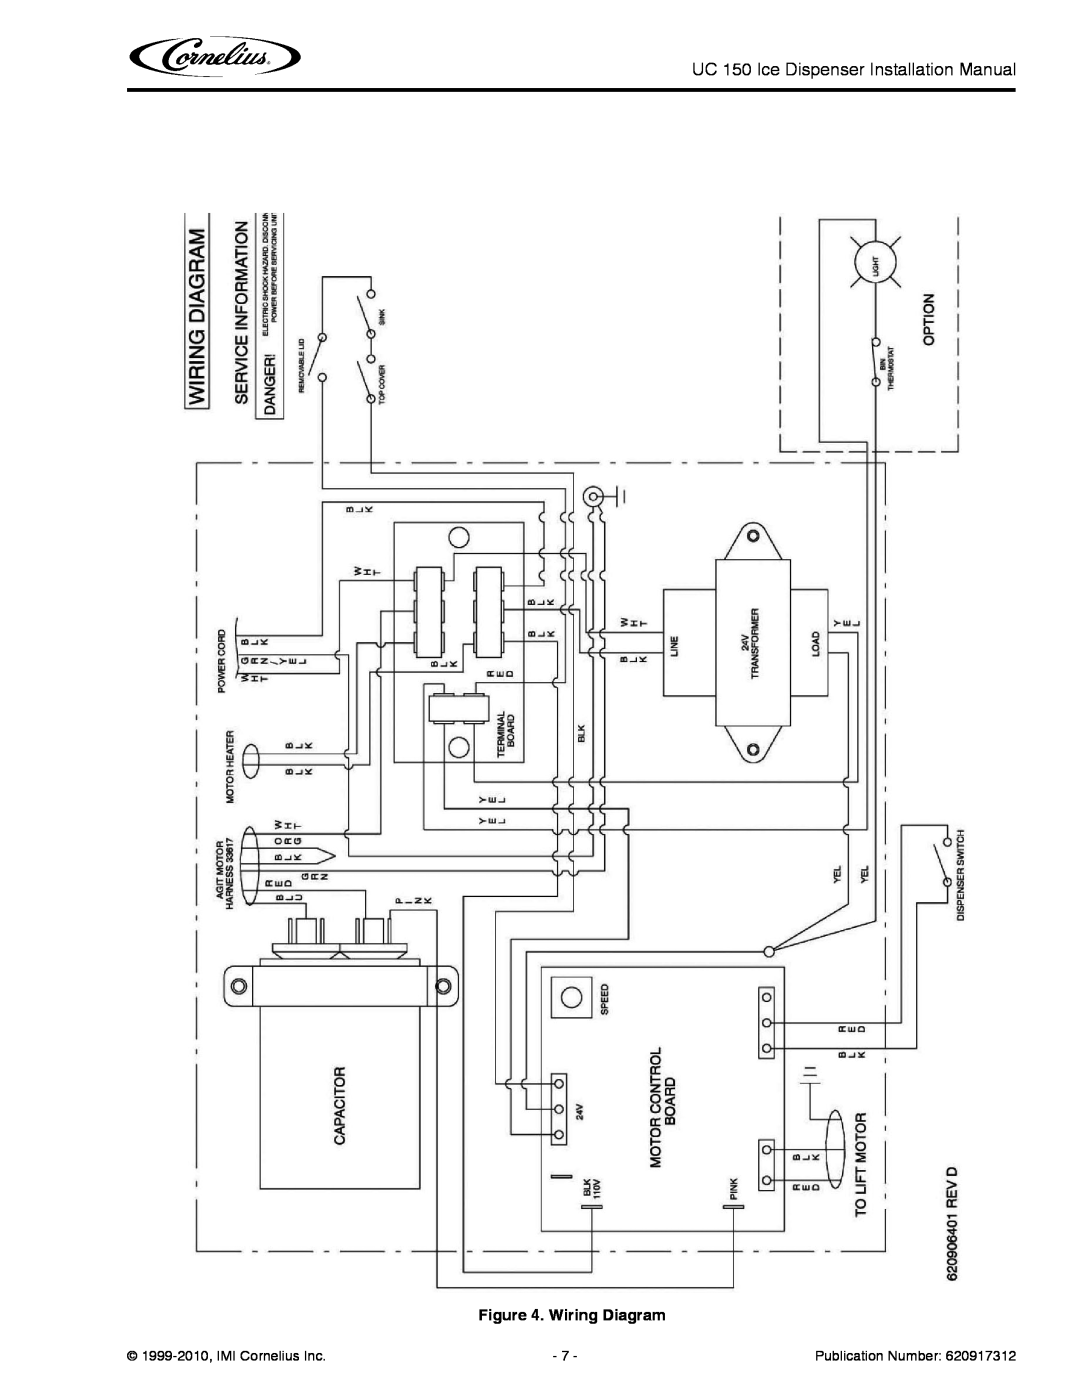 Cornelius UC 150 installation manual Wiring Diagram, 1999-2010,IMI Cornelius Inc, Publication Number 